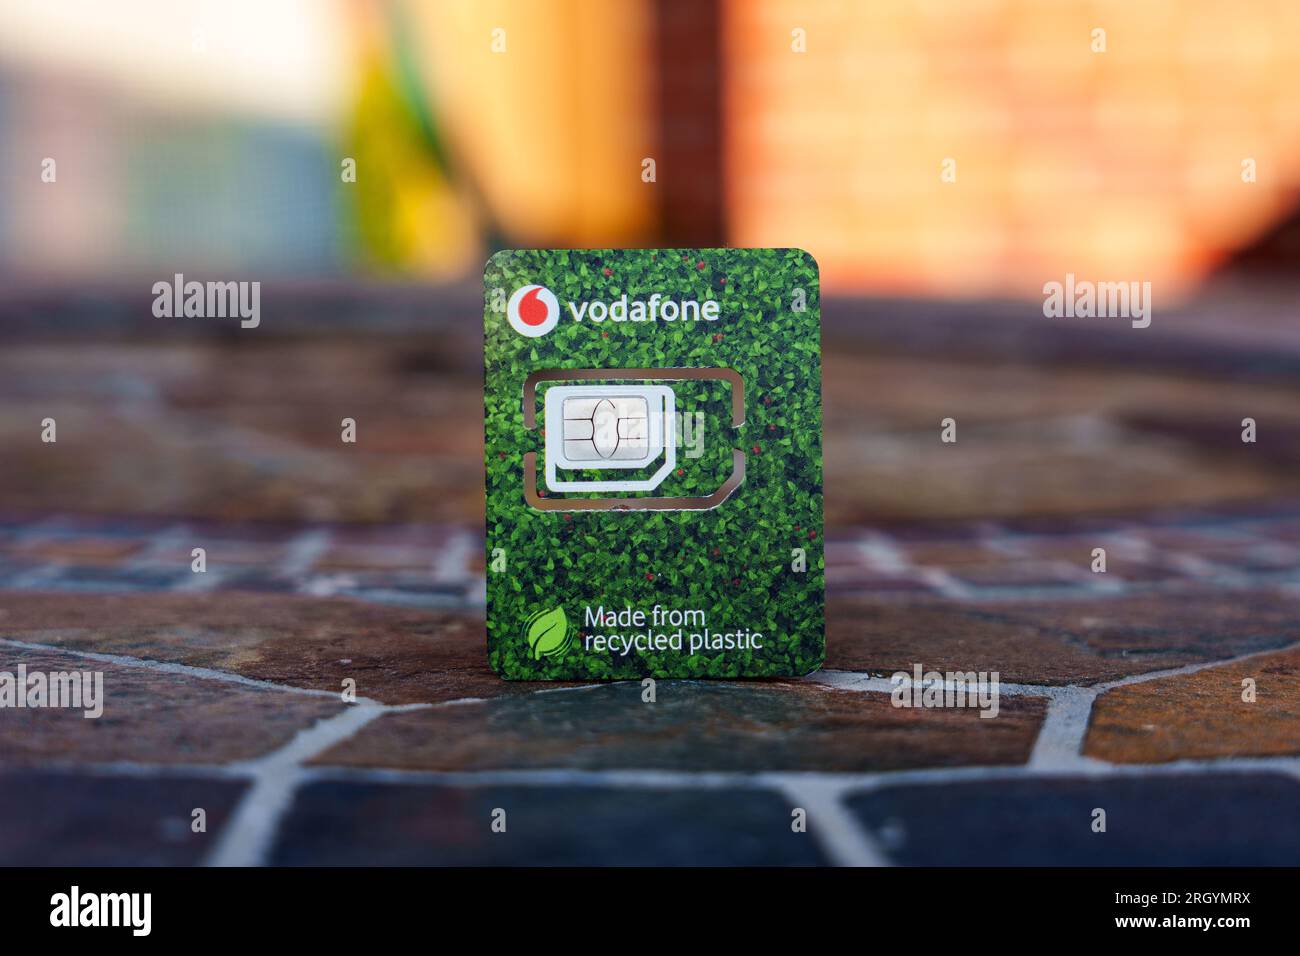 Scheda SIM Vodafone realizzata in plastica riciclata. Immagine ravvicinata con sfondo sfocato e spazio di copia. Stafford, Regno Unito, 12 agosto 2023 Foto Stock